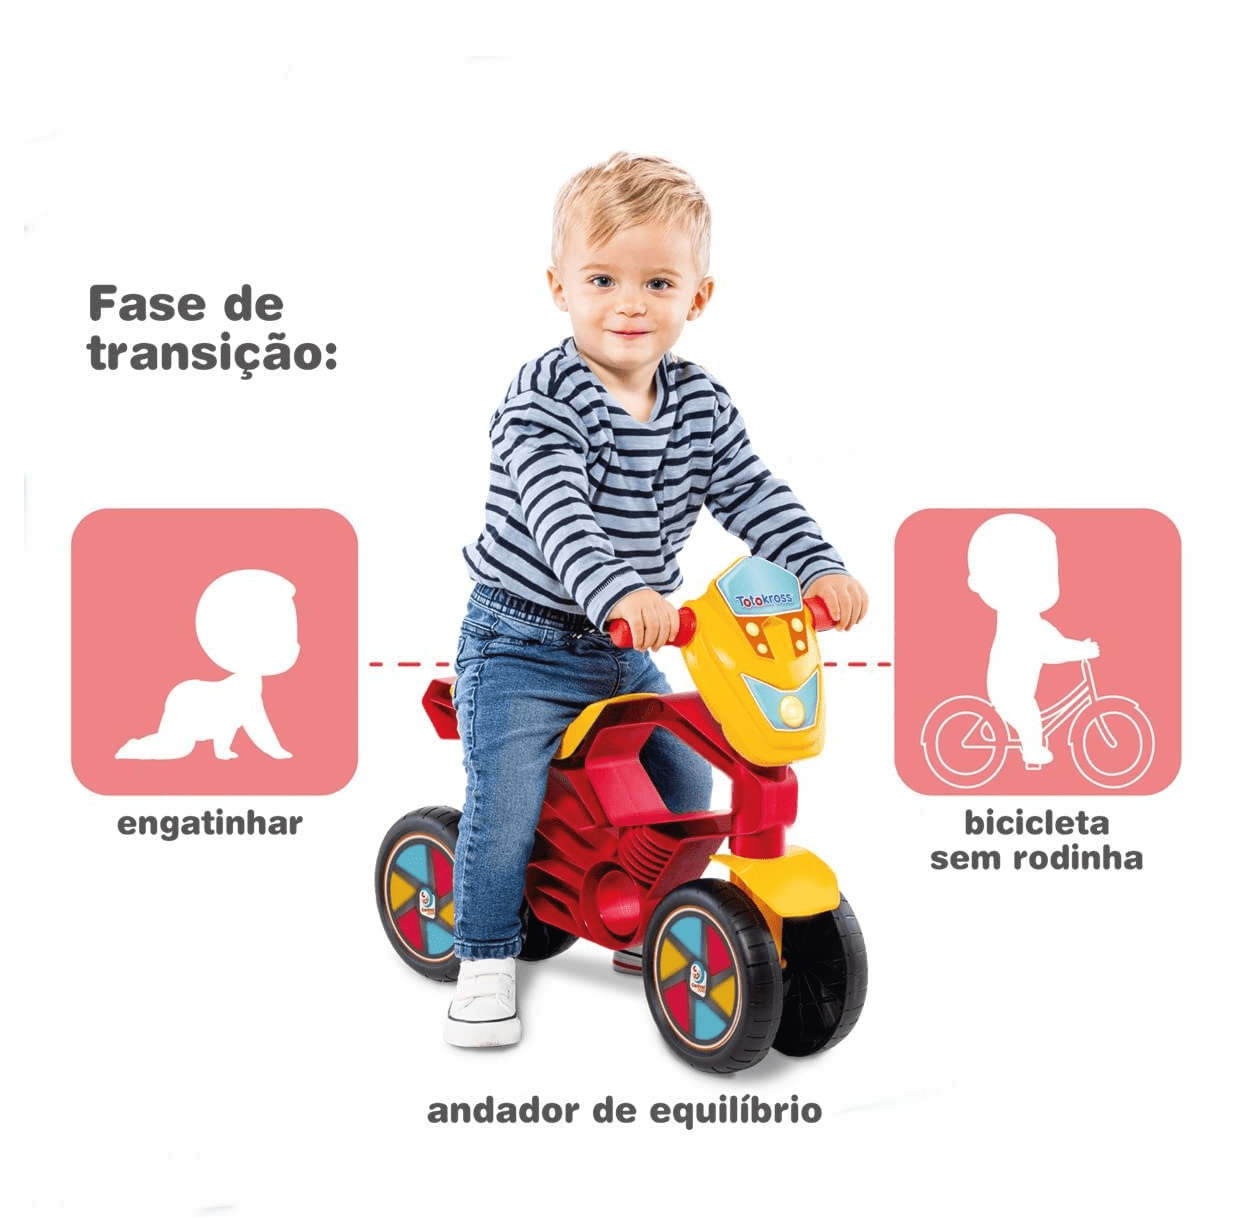 Totokross Motoca de Equilíbrio Vermelha Cardoso - Fátima Criança